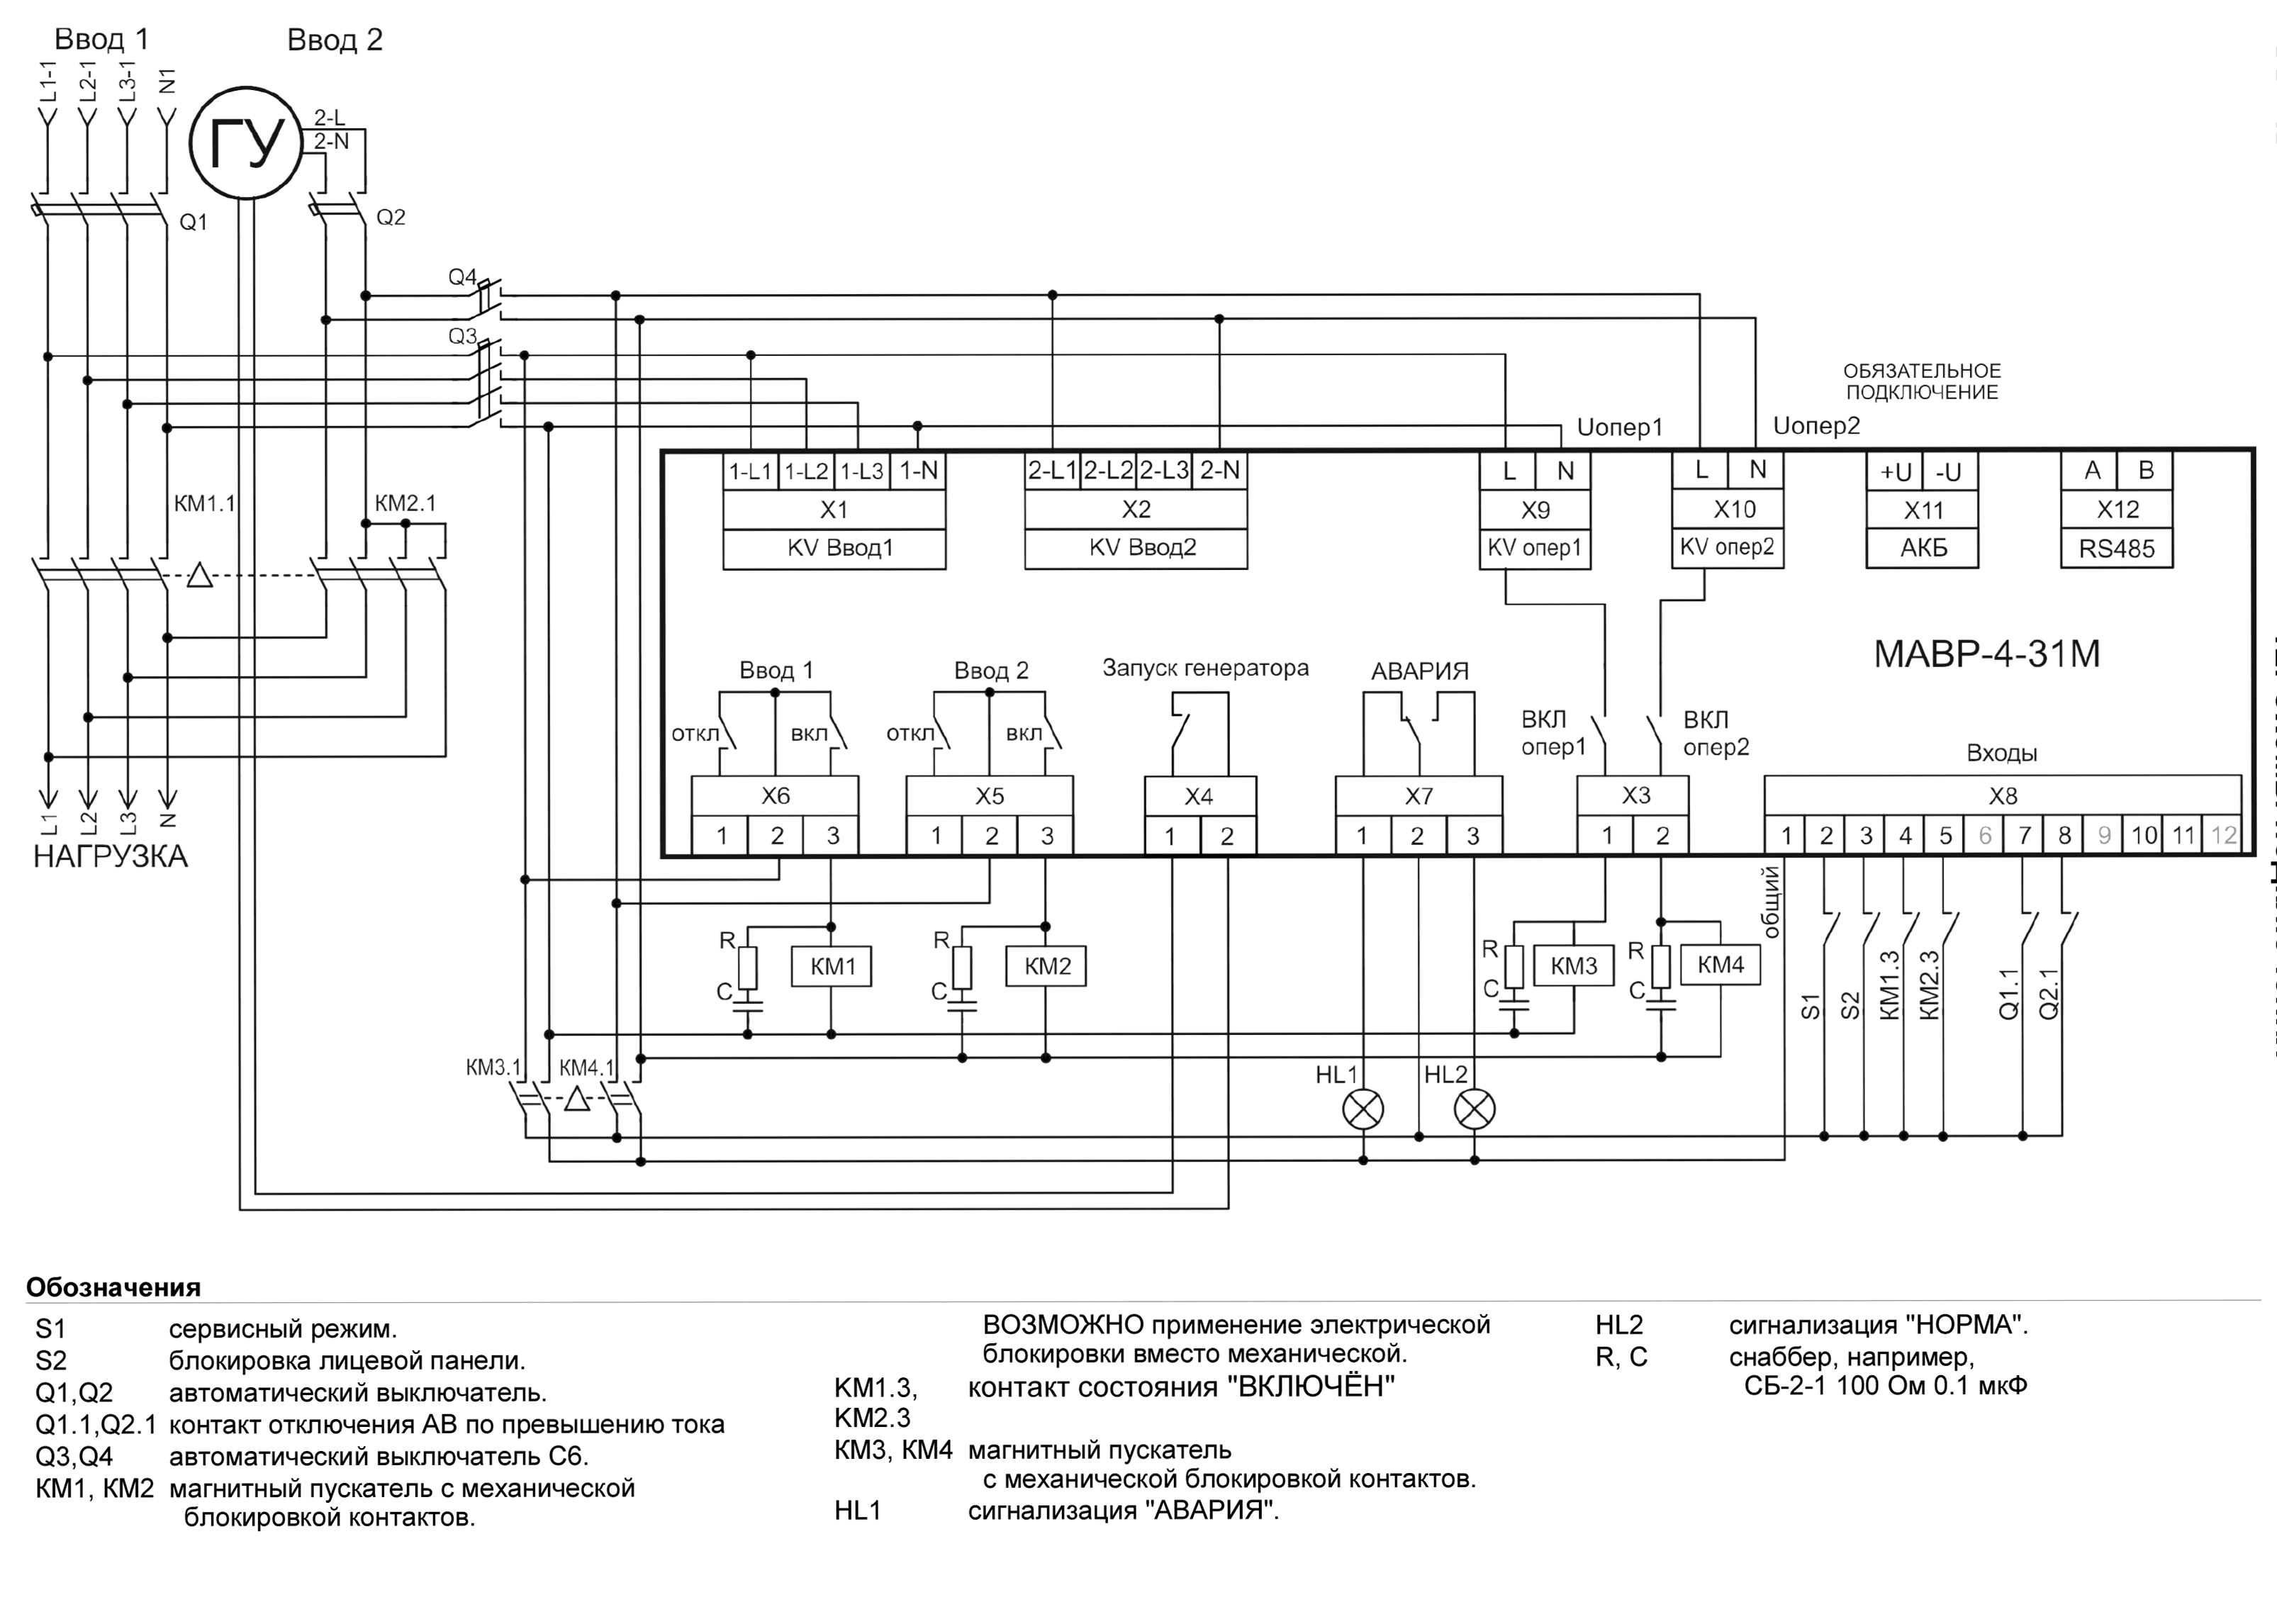 Схема АВР на магнитных пускателях 3-х фазный ввод и 1-фазный генератор МАВР-4-31М